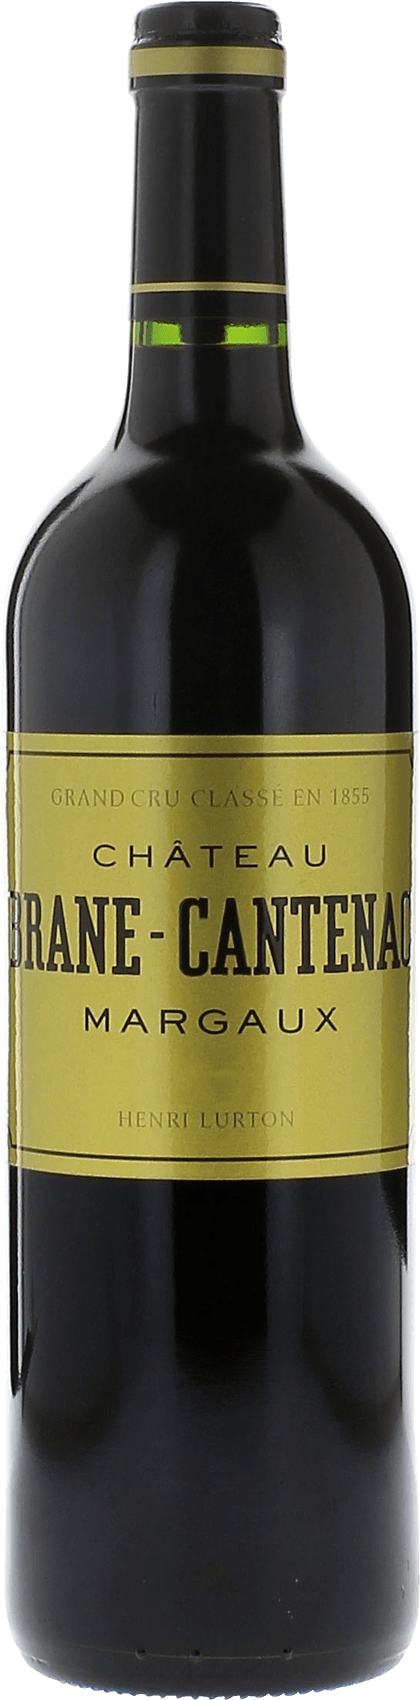 Brane cantenac 2008 2me Grand cru class Margaux, Bordeaux rouge